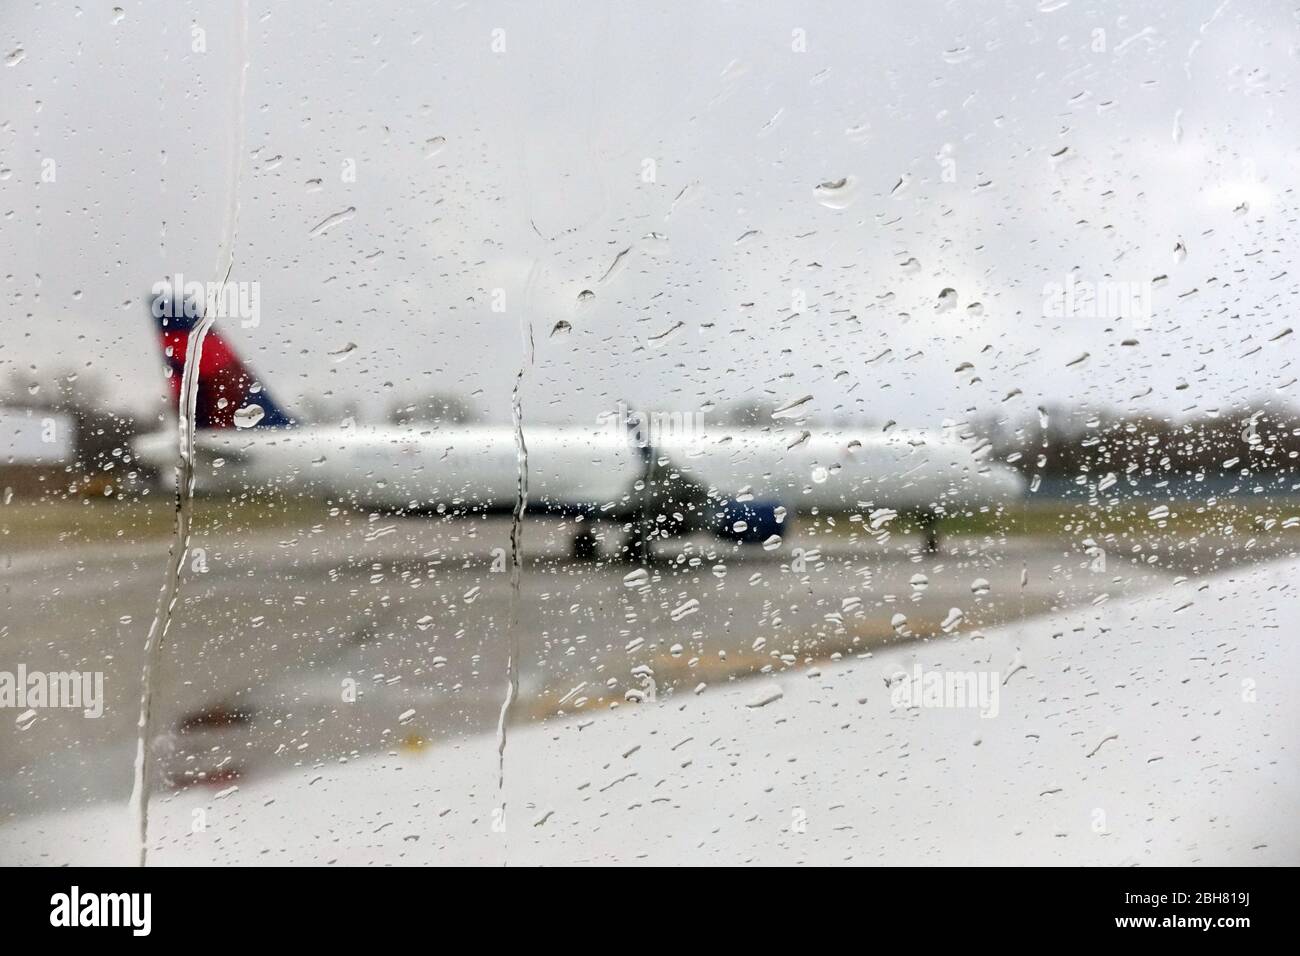 09.04.2020, Minneapolis, Minnesota, USA - Delta Airlines Flugzeuge schimmern durch eine mit Regentropfen benetzte Fensterscheibe. 00S200409D262CAROEX.JPG [MOD Stockfoto